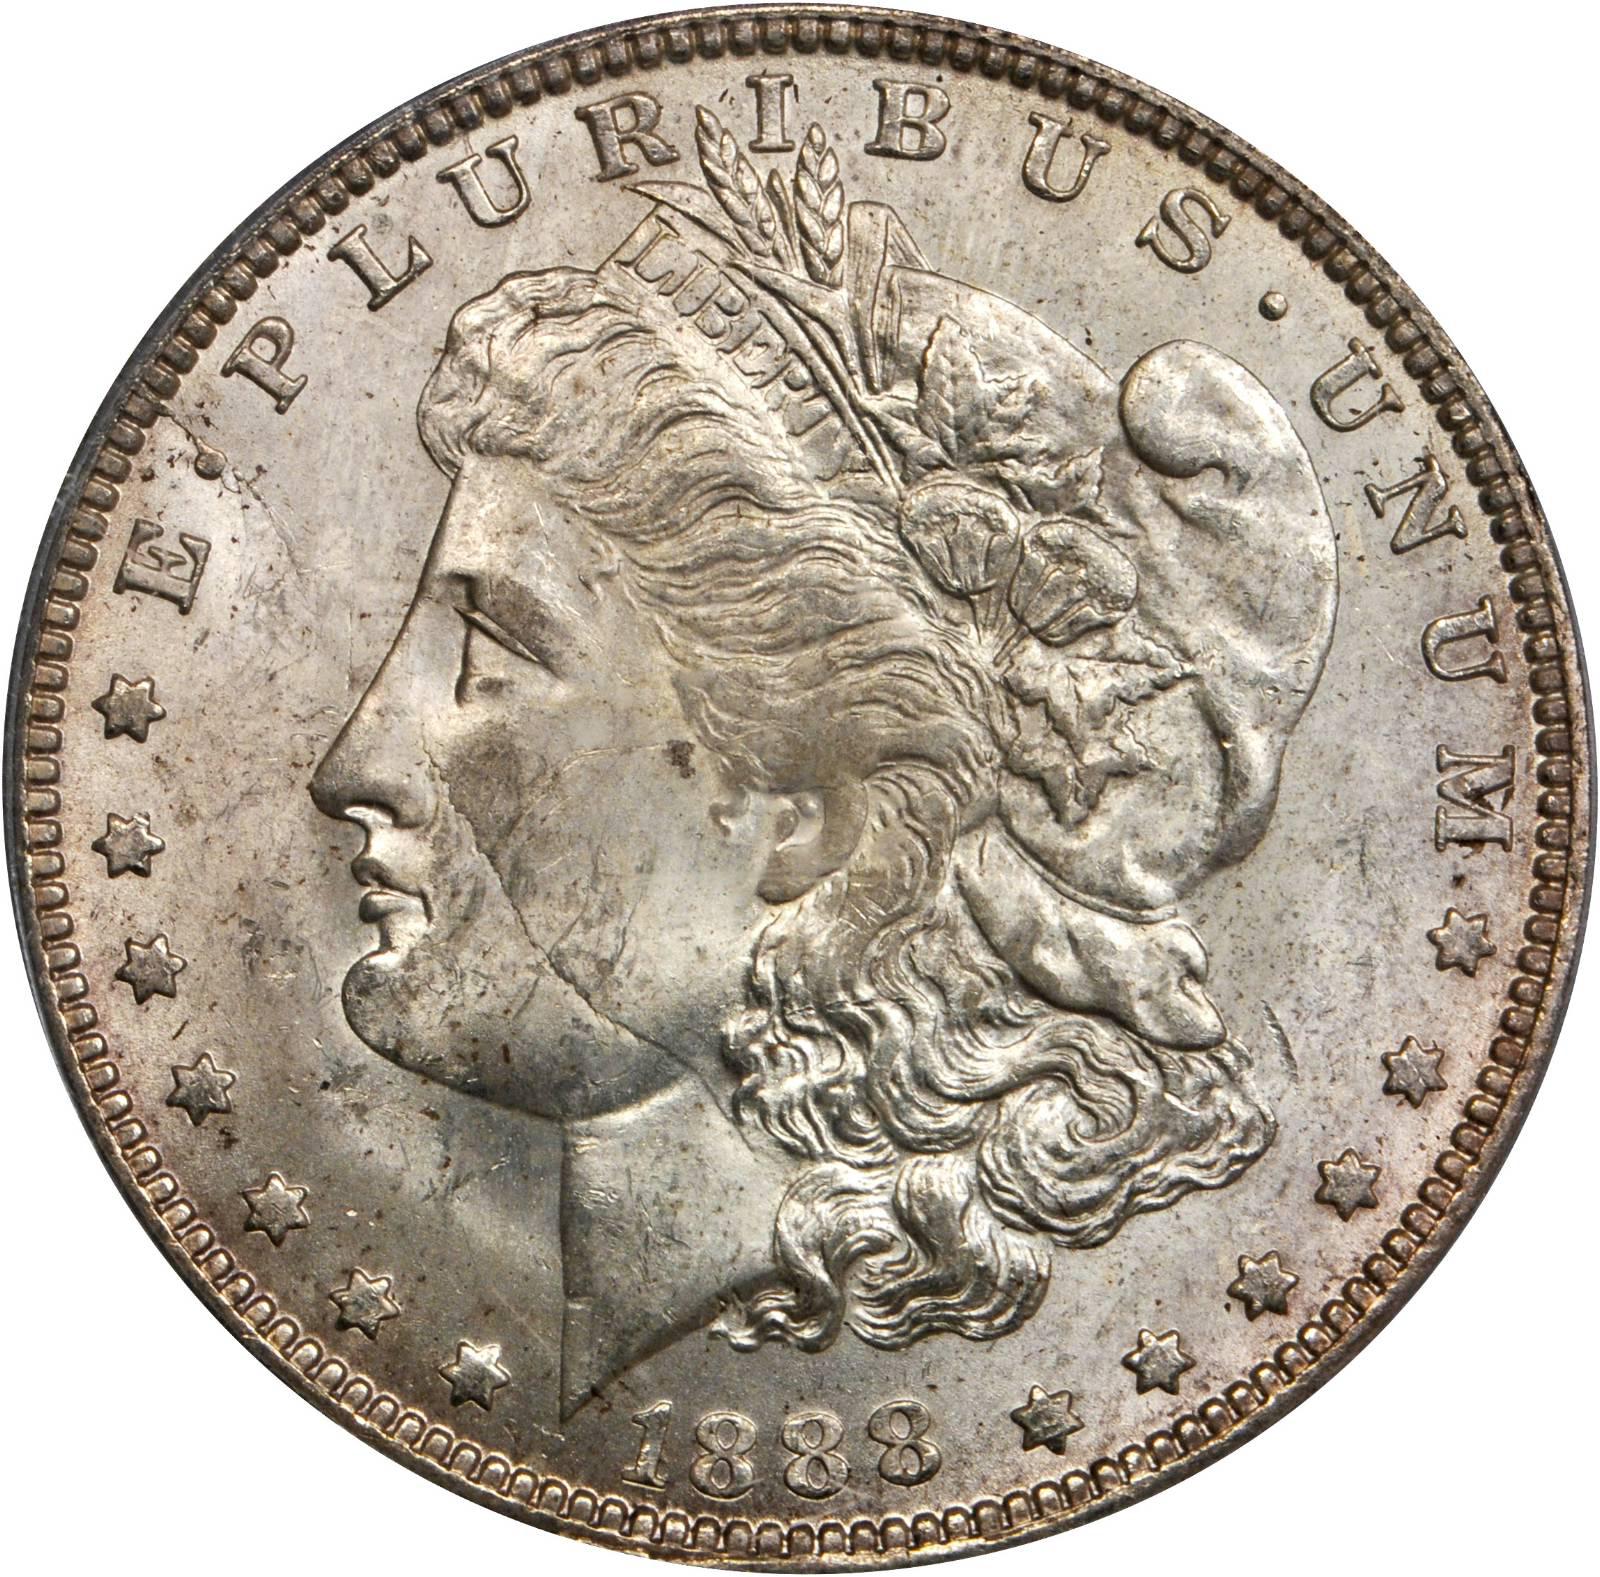 1888 o silver dollar value